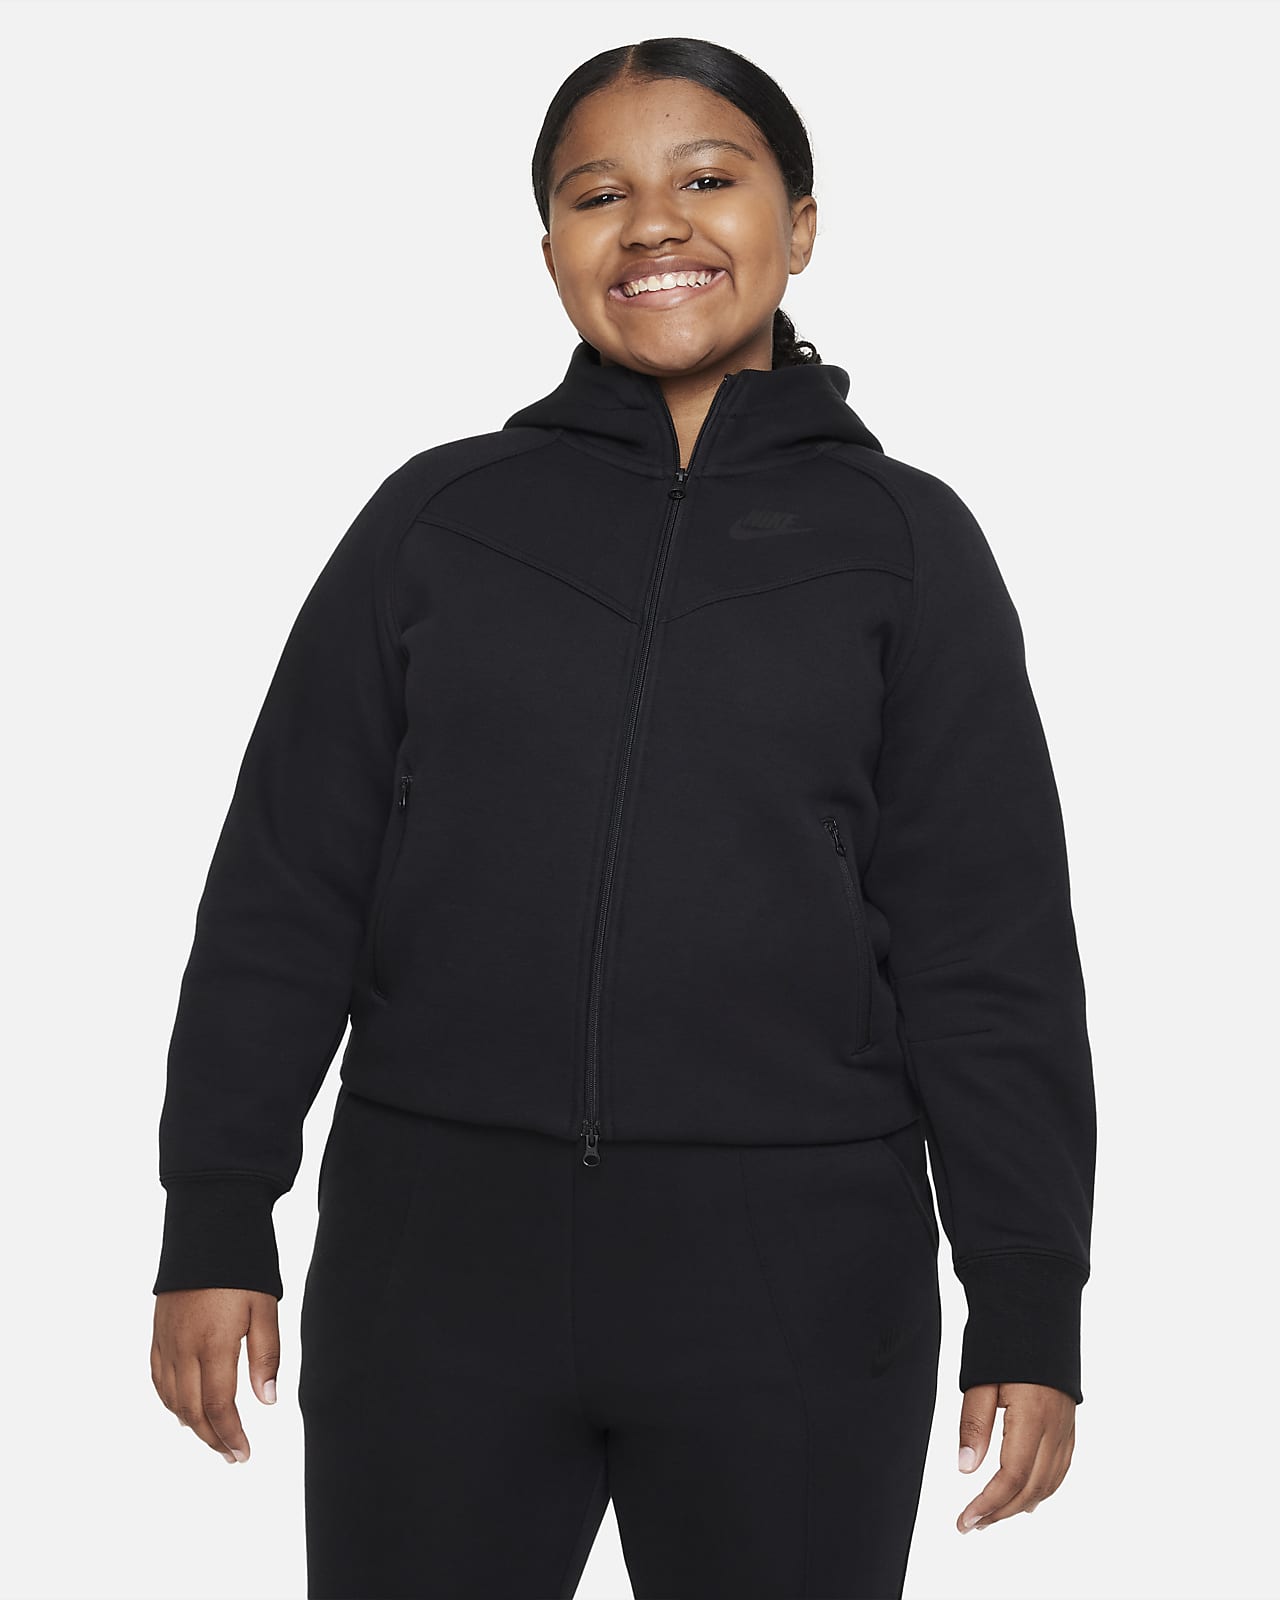 Bluza z kapturem i zamkiem na całej długości dla dużych dzieci (dziewcząt) Nike Sportswear Tech Fleece (szerszy rozmiar)